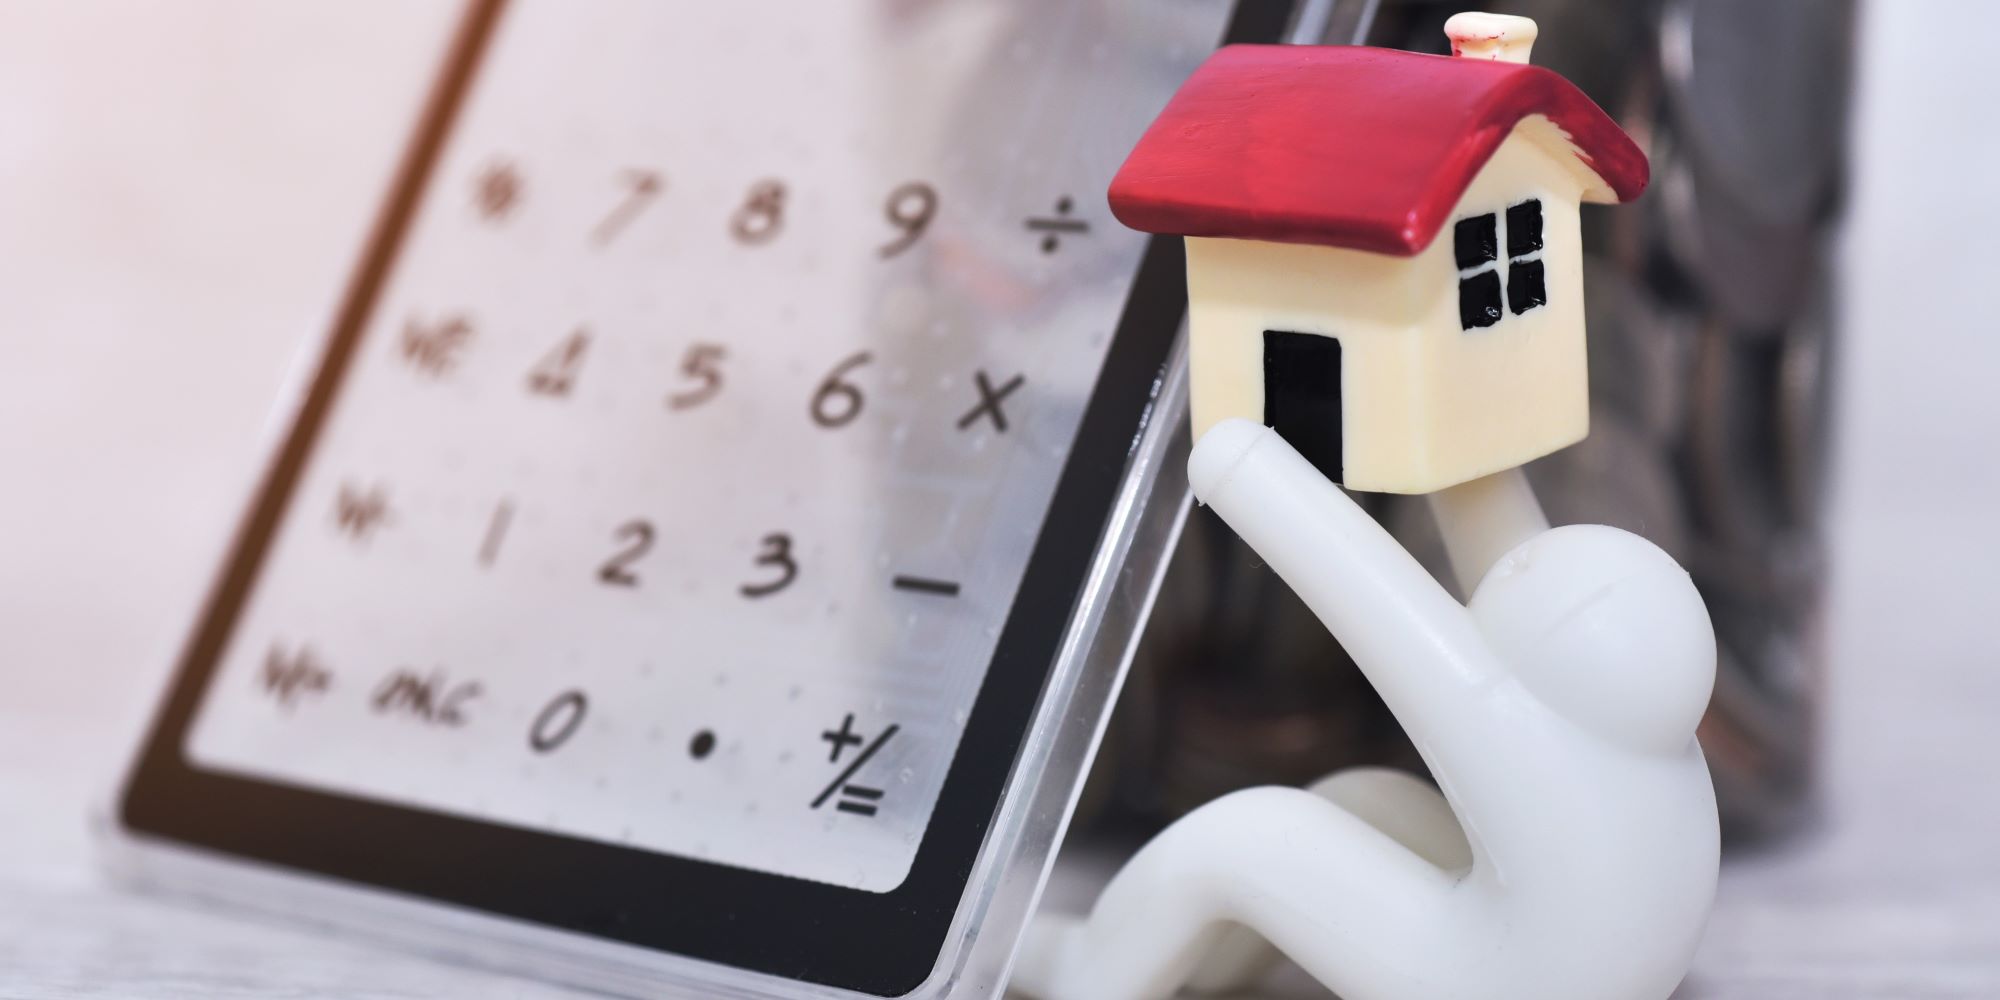 Muñequito sostiene una casita de juguete, y tiene una calculadora al lado. Representa el cálculo de plusvalía de una casa.